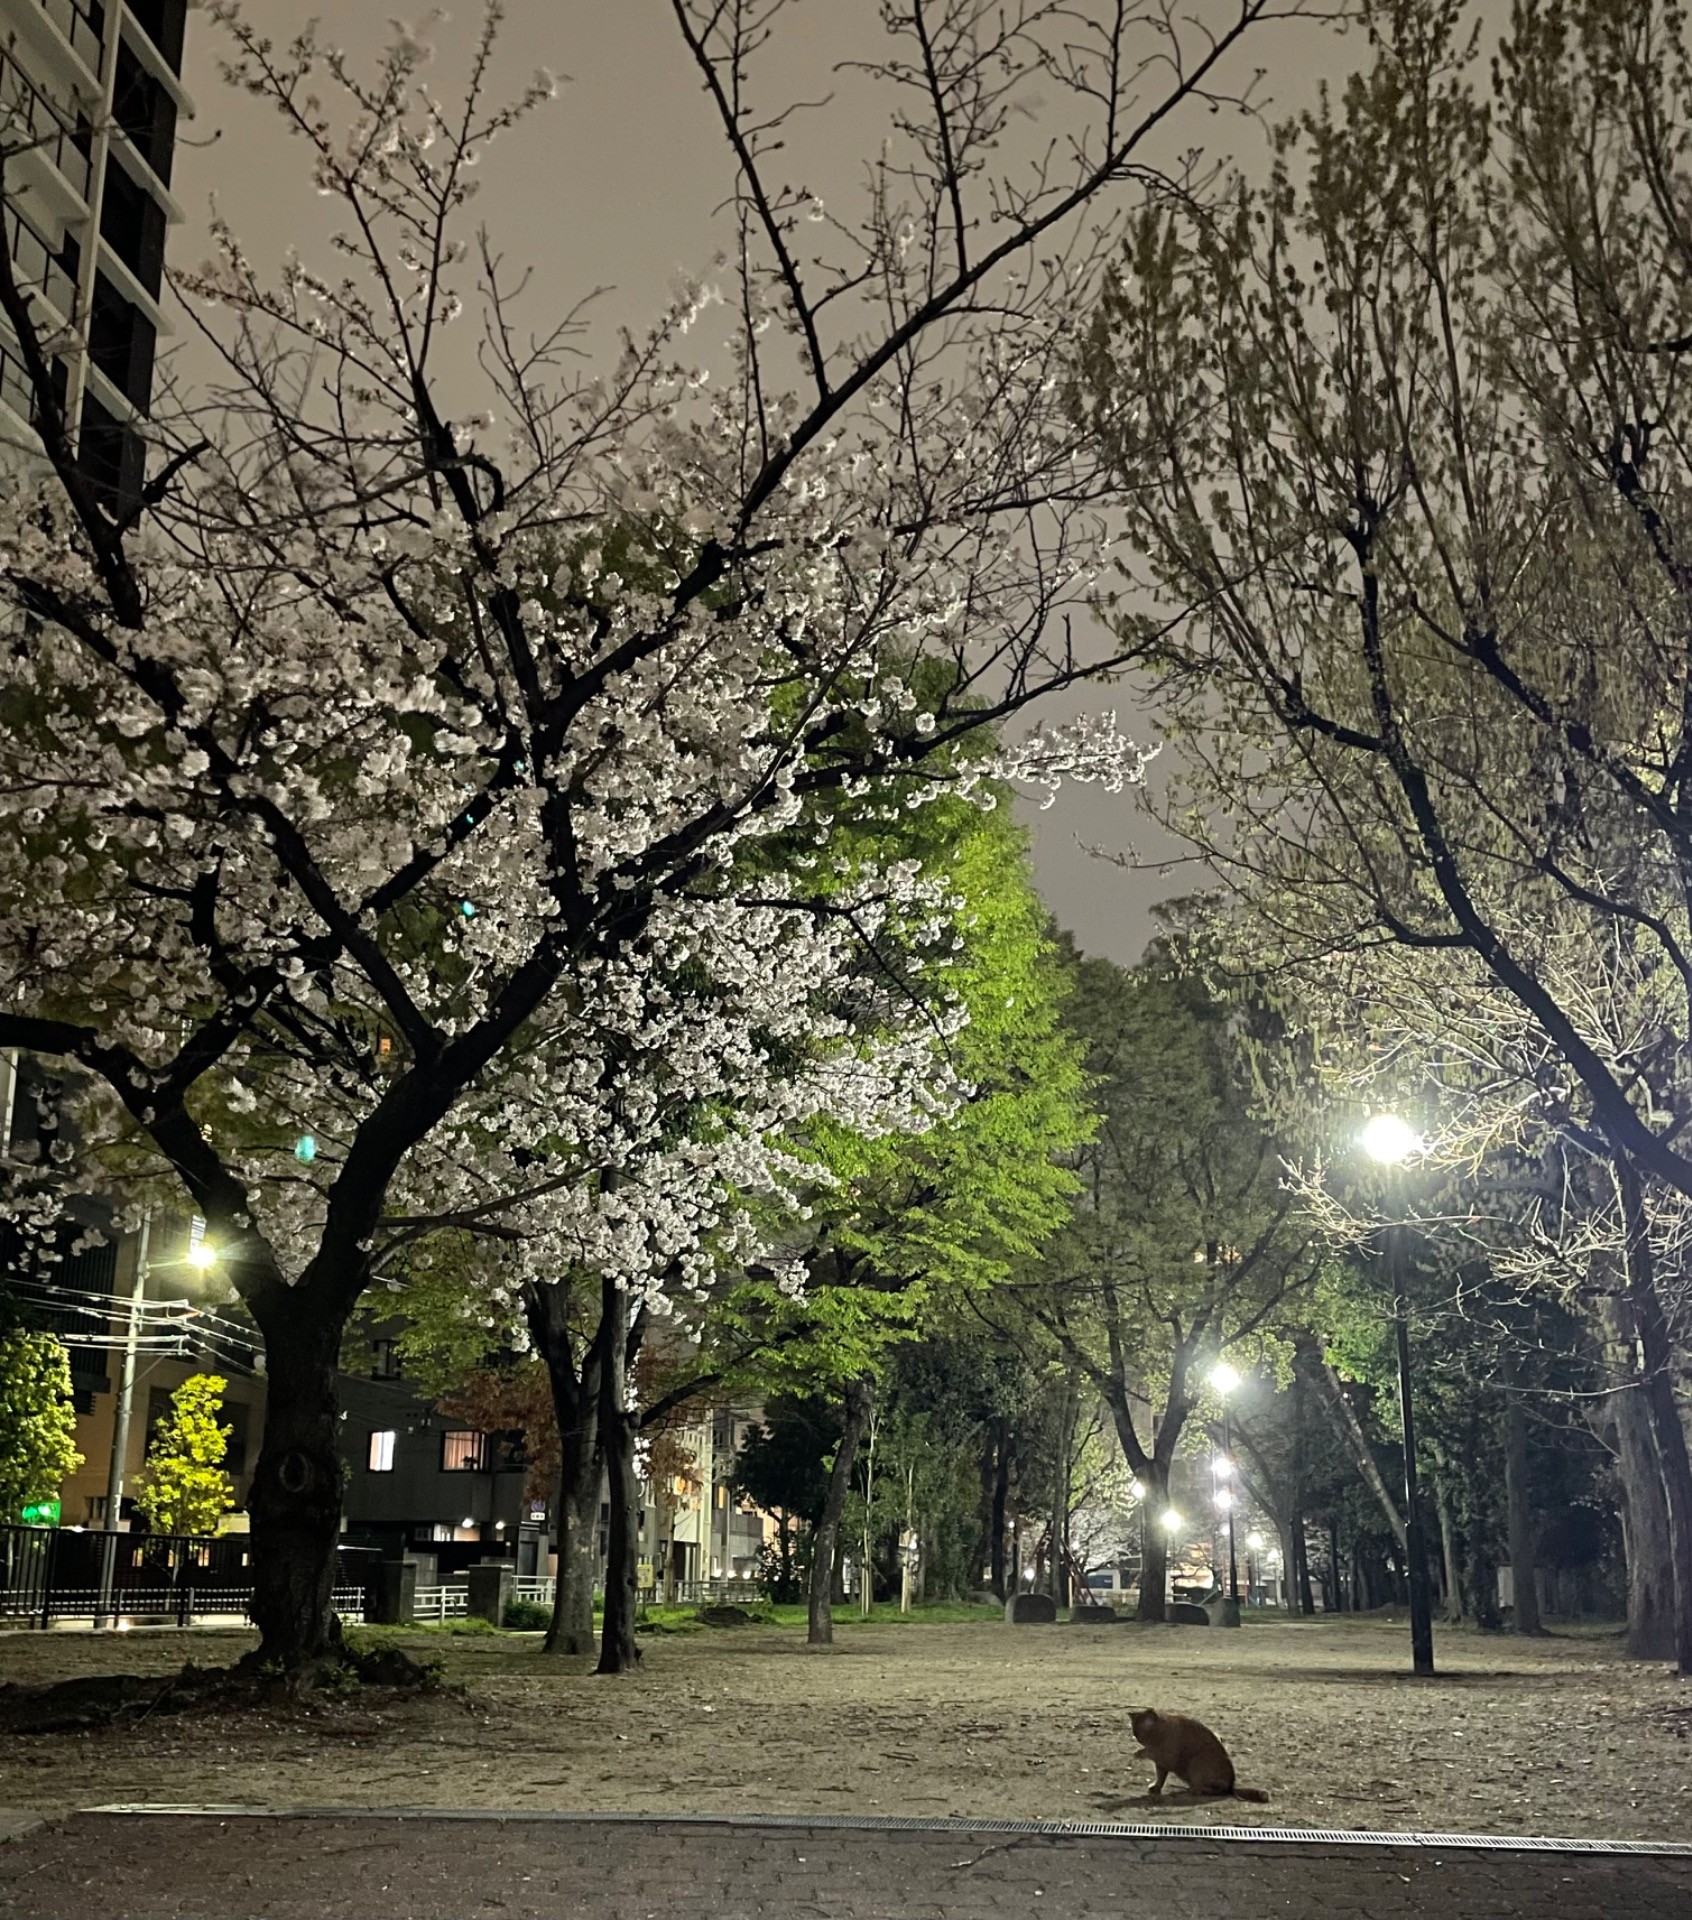 桜と猫